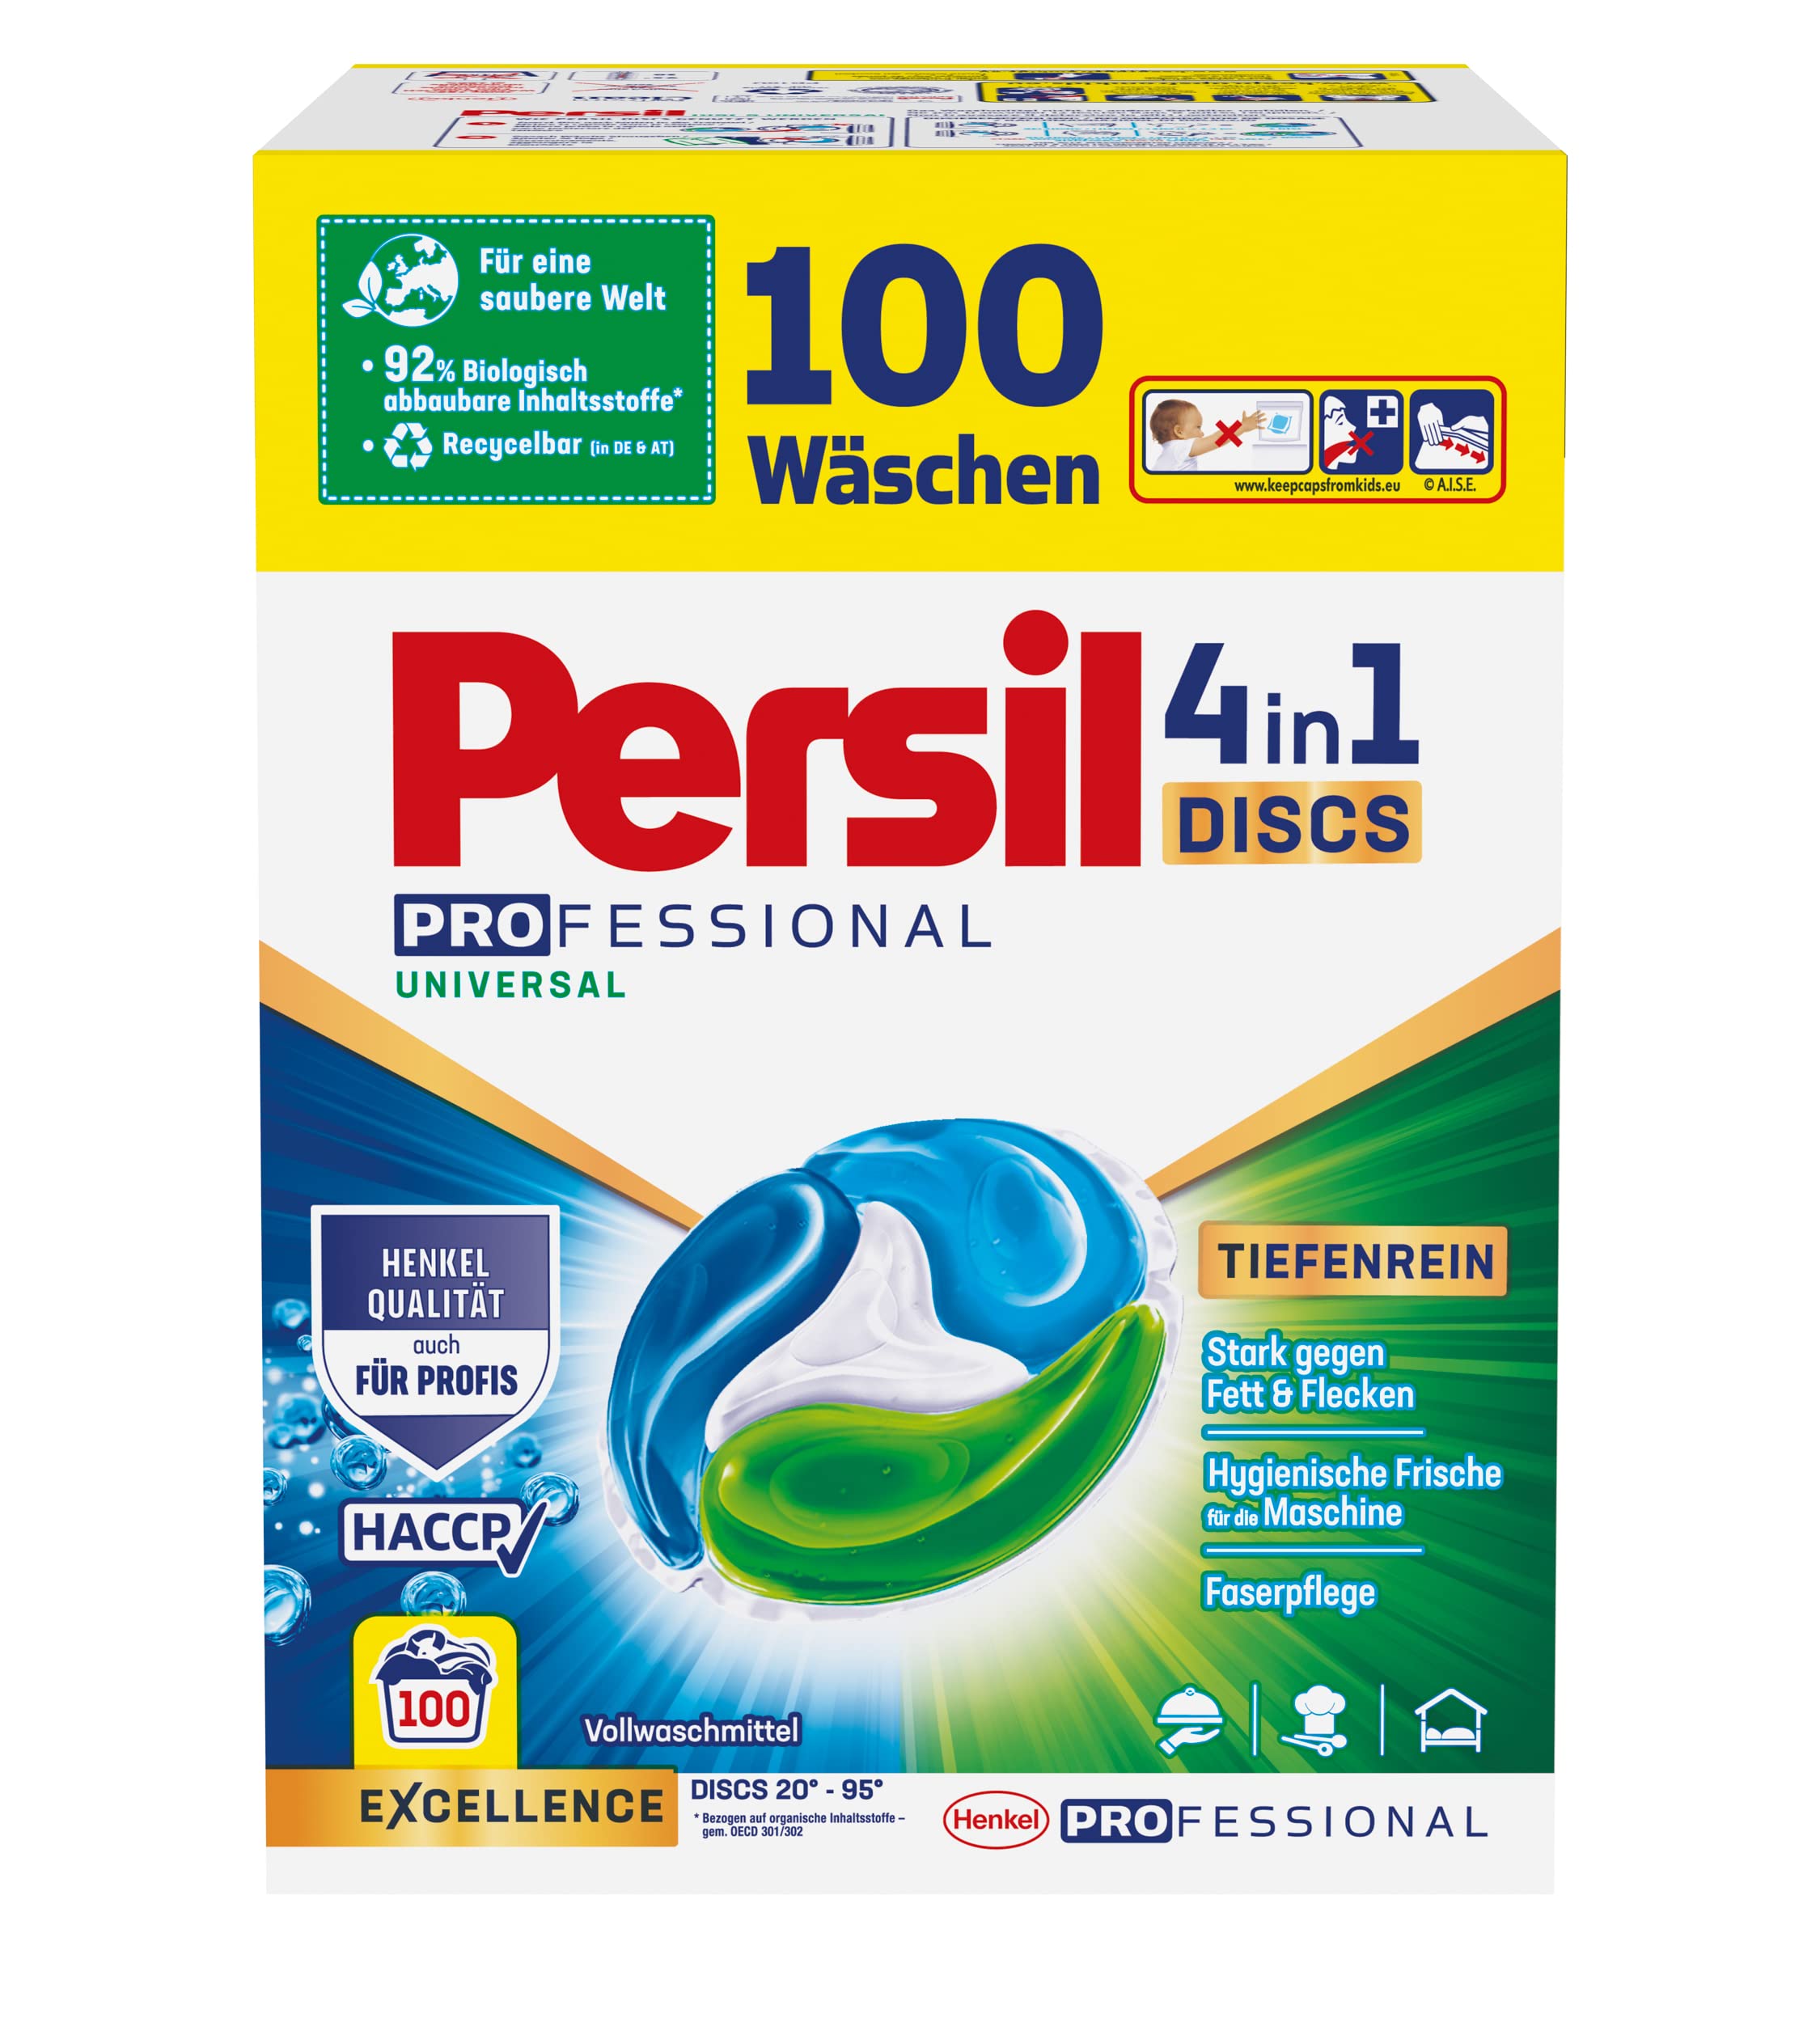 Persil Tiefenrein 4in1 DISCS (100 Waschladungen), Universal Waschmittel mit Tiefenrein Technologie, Vollwaschmittel für reine Wäsche und hygienische Frische für die Maschine